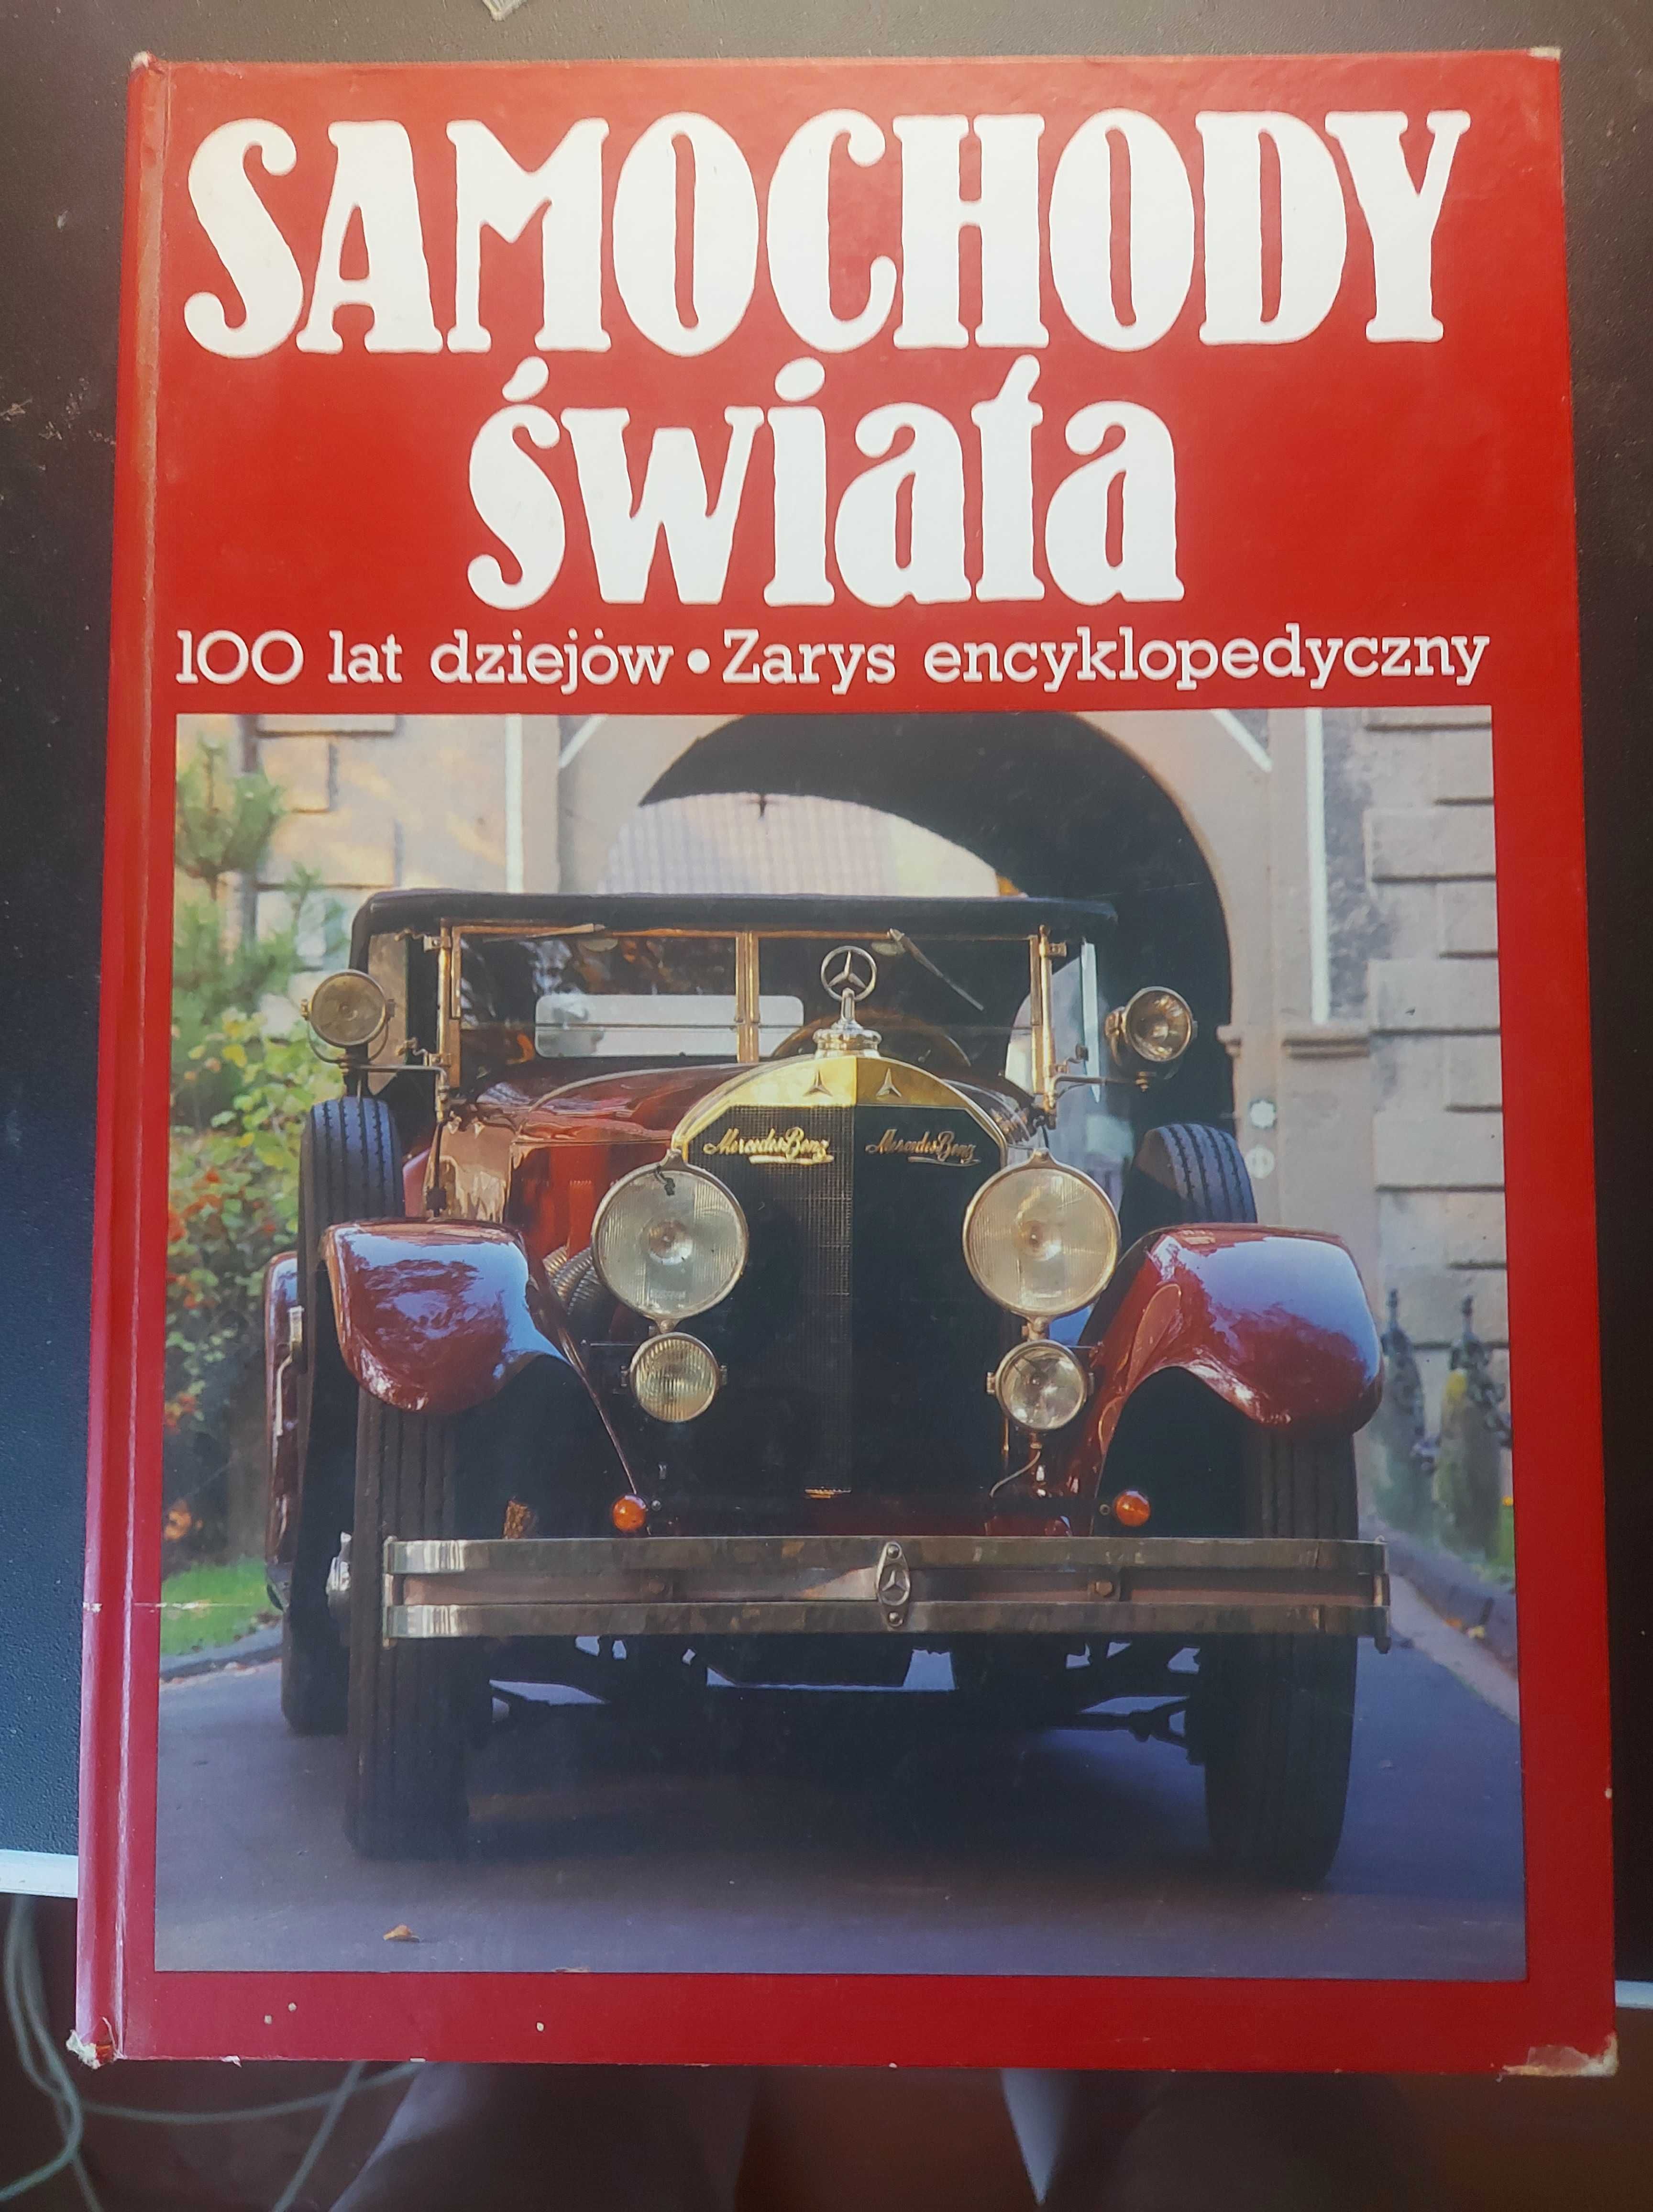 Samochody swiata (Автомобілі світу) H.Schrader 1992 ISBN 83-7071-002-6